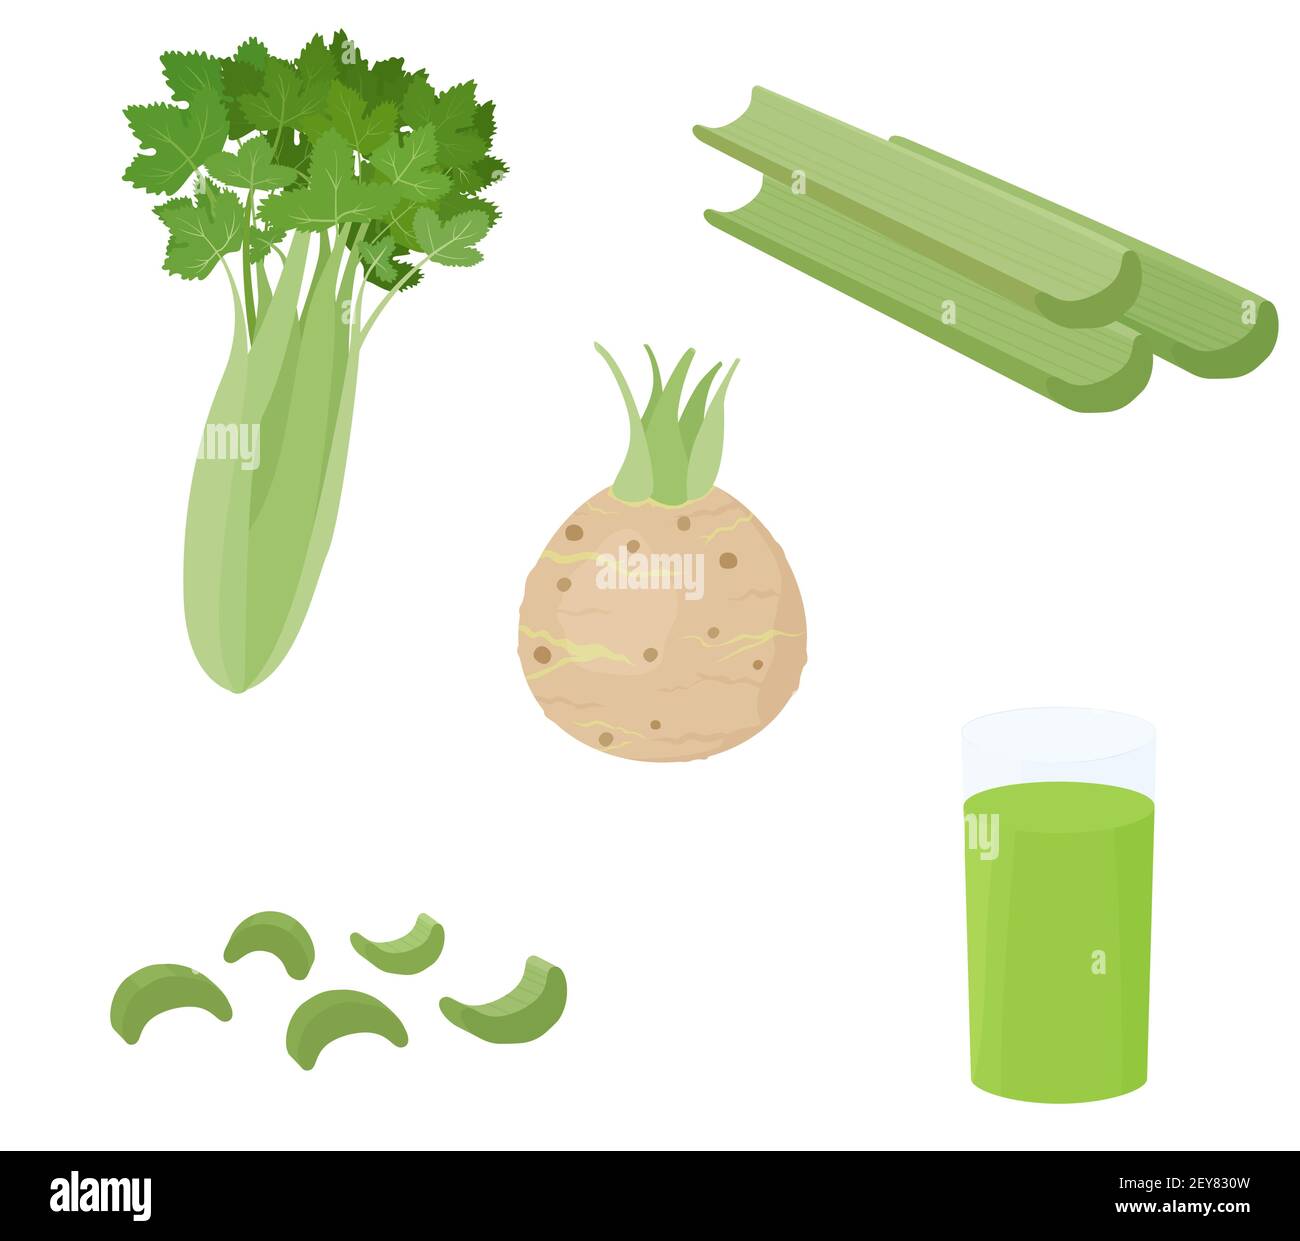 Grüne Sellerie Gemüsebalmen und Wurzel isoliert auf weißem Hintergrund. Gesunde diätische bunte Lebensmittel Zutat Vektor Cartoon Illustration. Stock Vektor